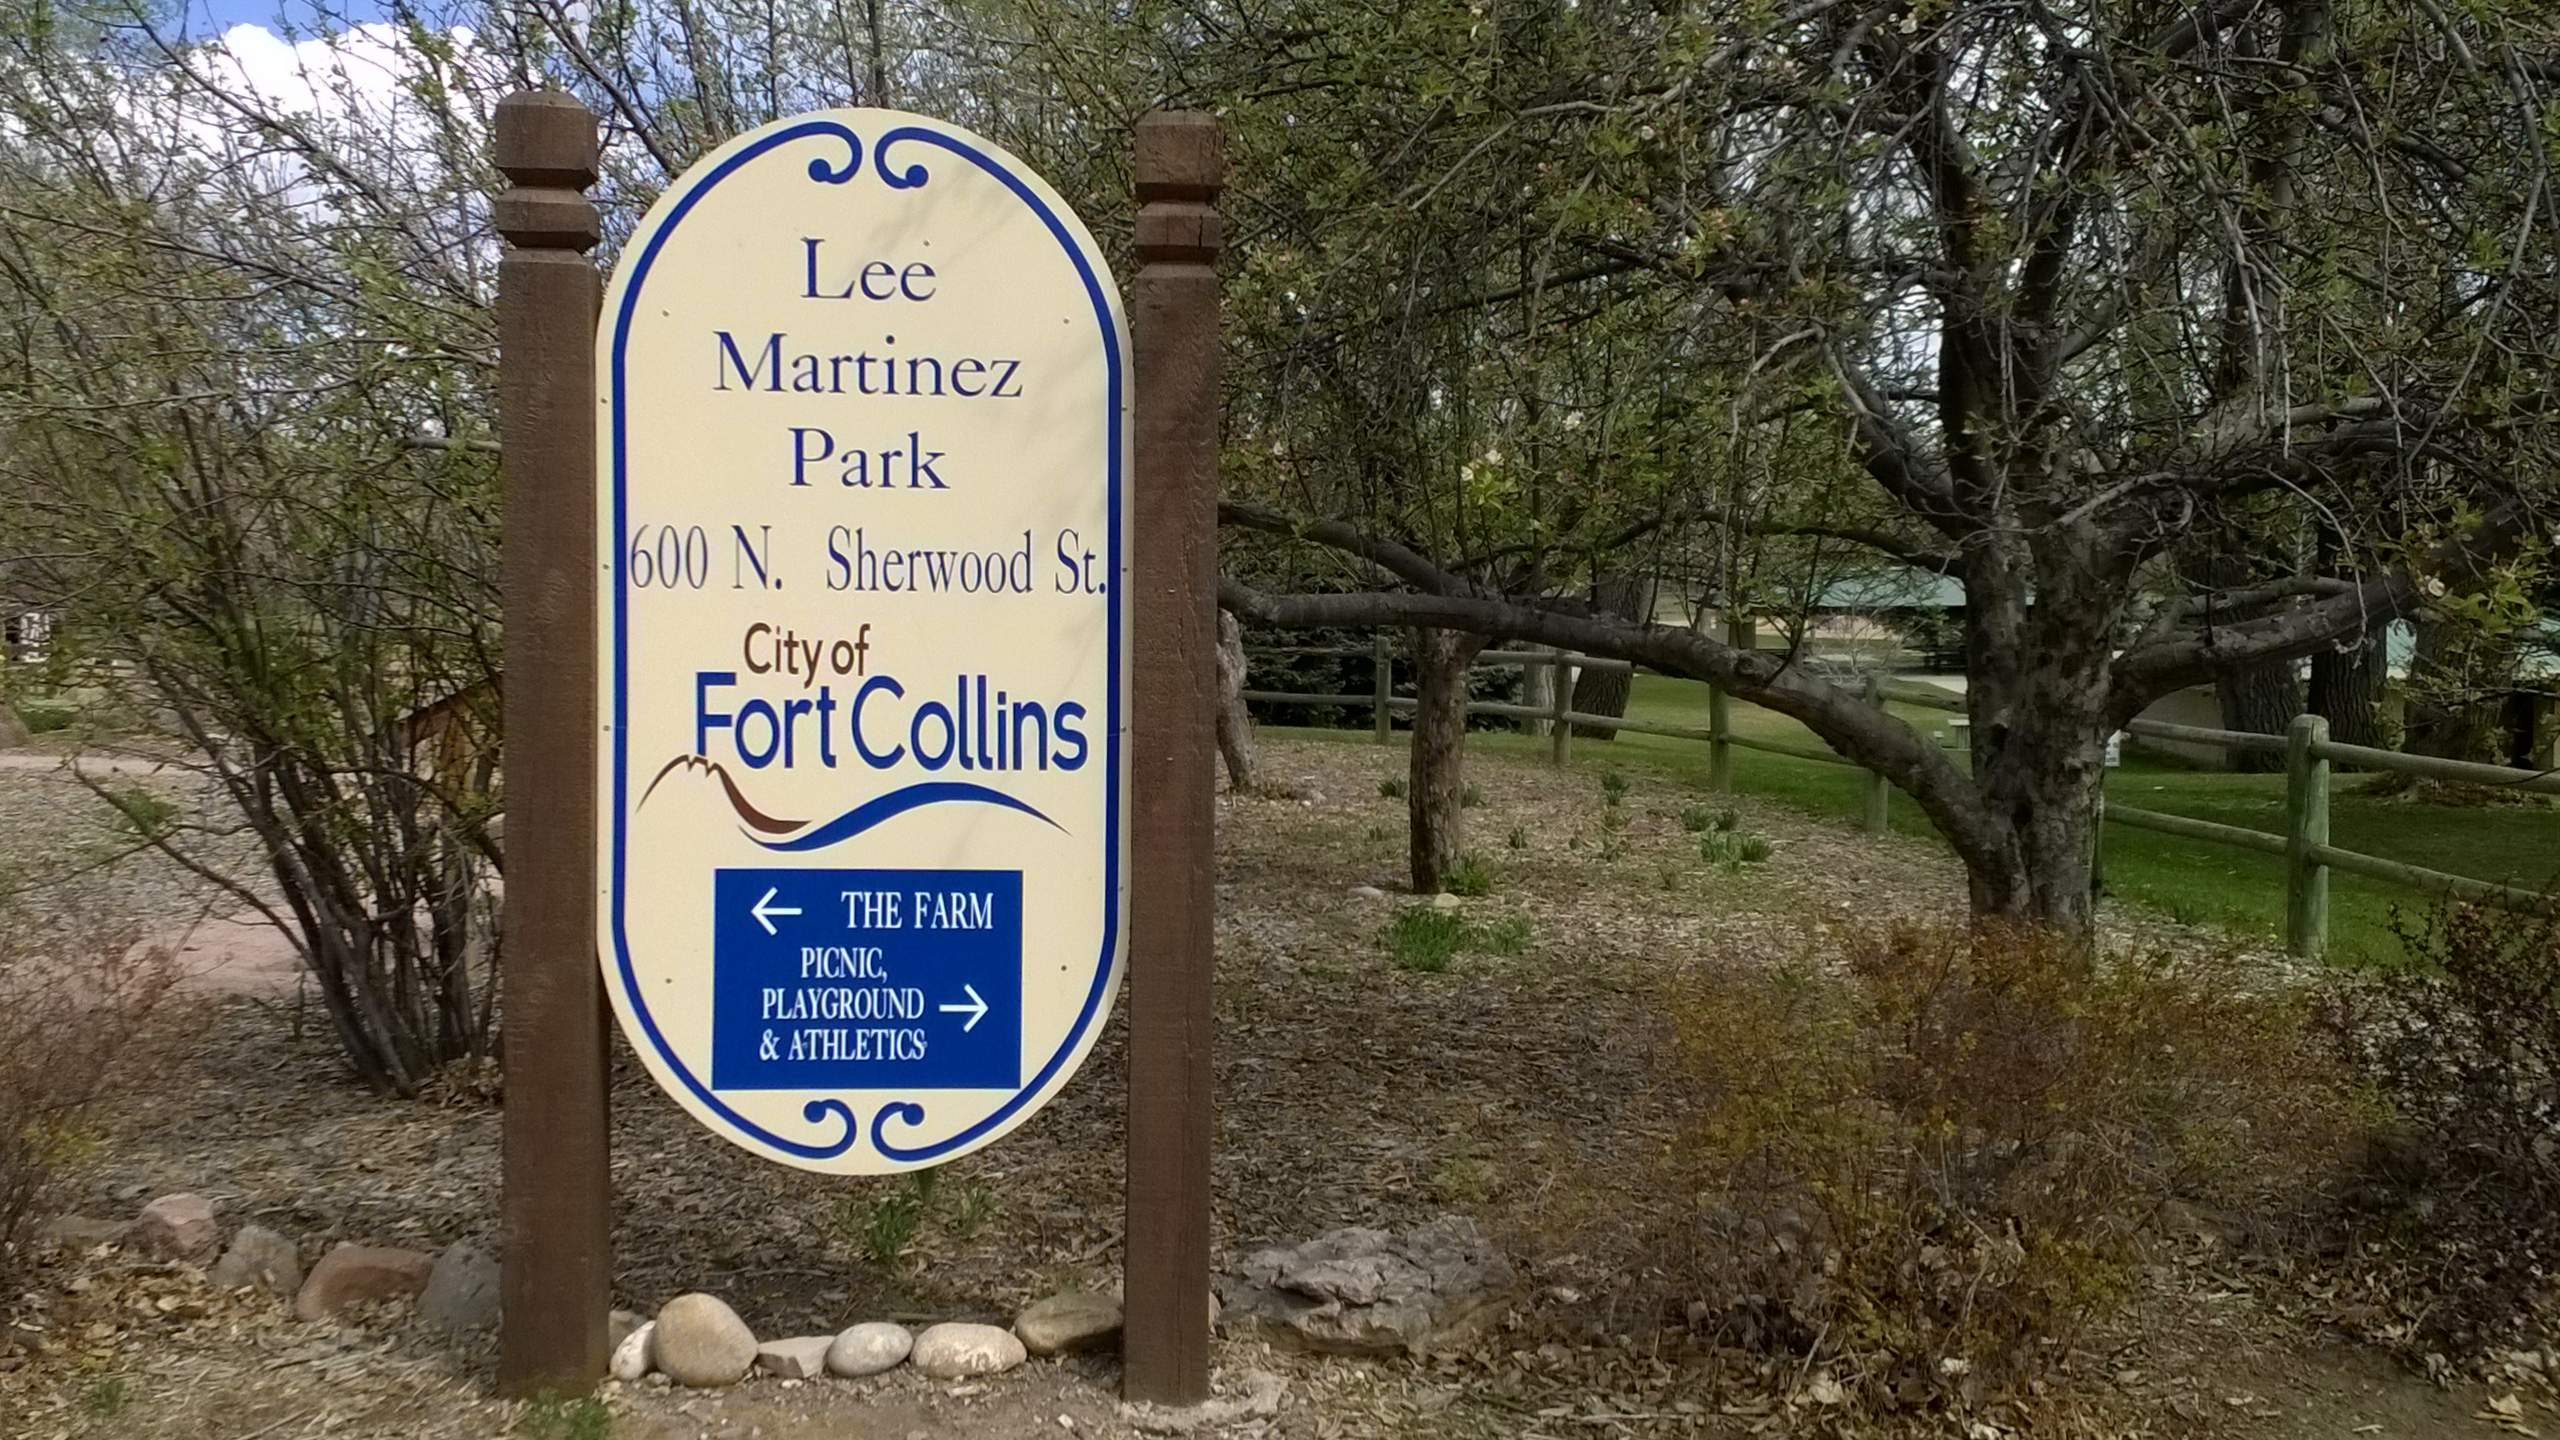 entrance to Lee Martinez Park, Fort Collins